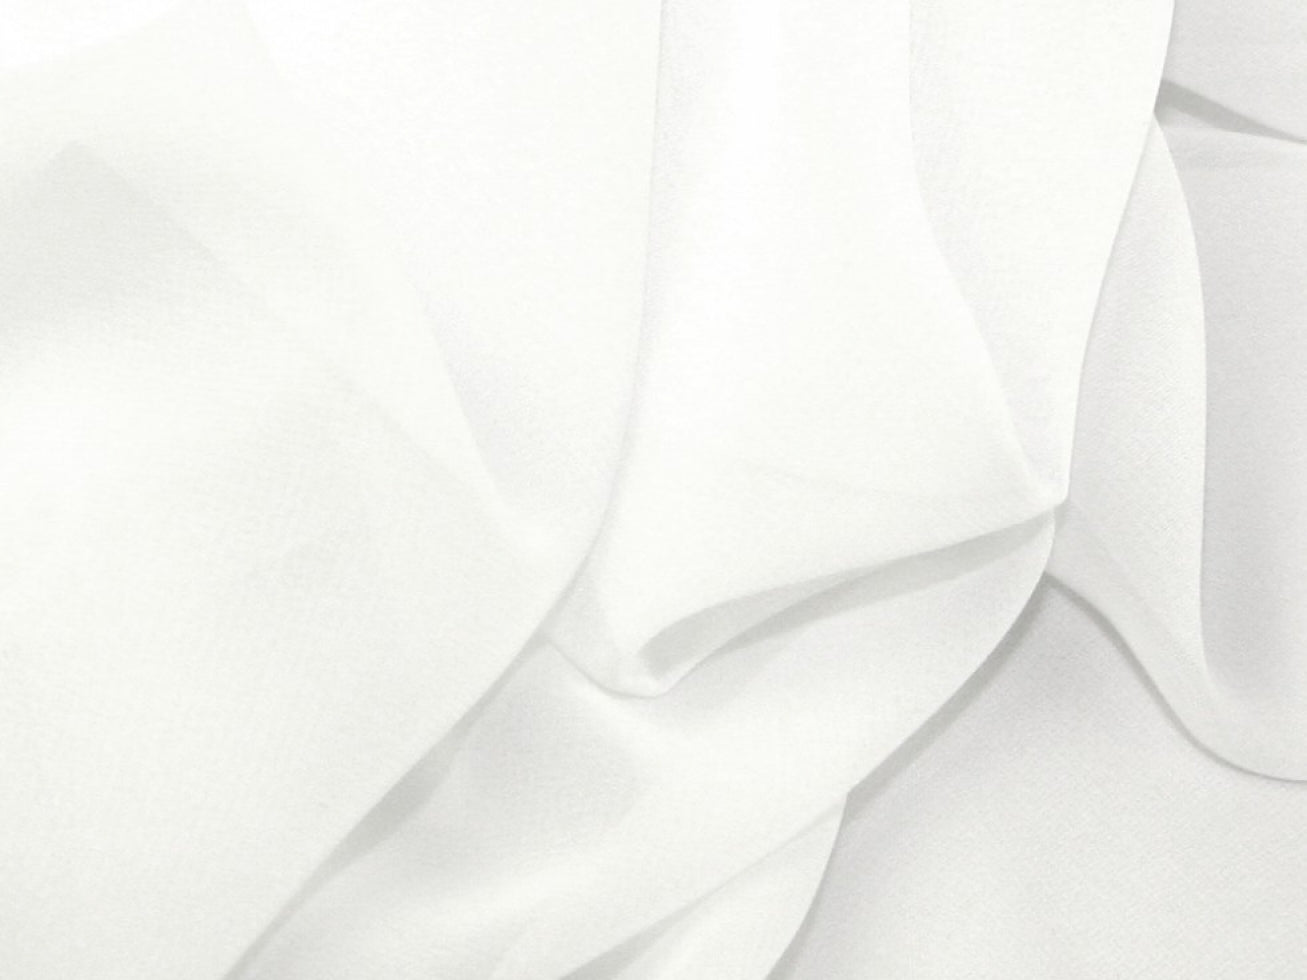 Darbari Plain Polyester Chiffon Soft Light As Feather Chiffon- White